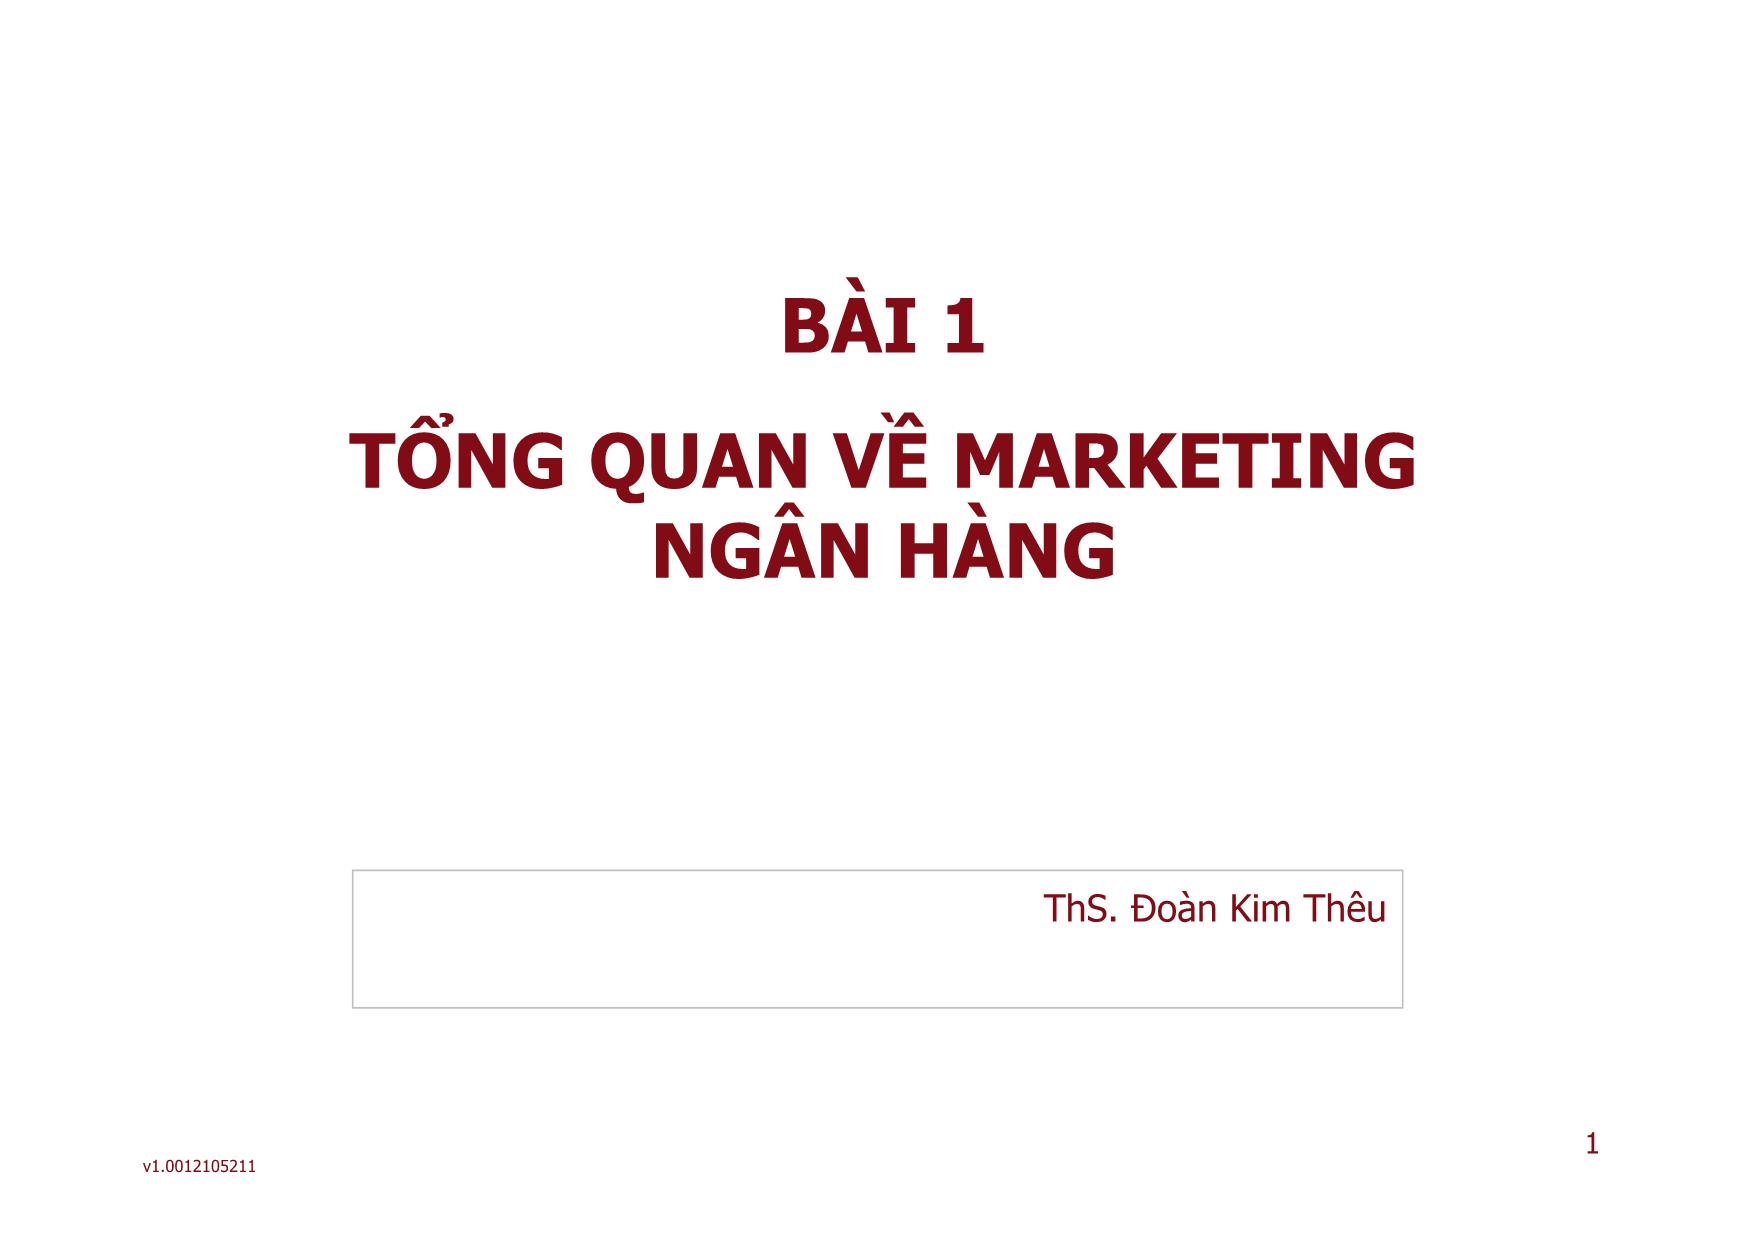 Marketing ngân hàng - Bài 01: Tổng quan về marketing ngân hàng trang 1